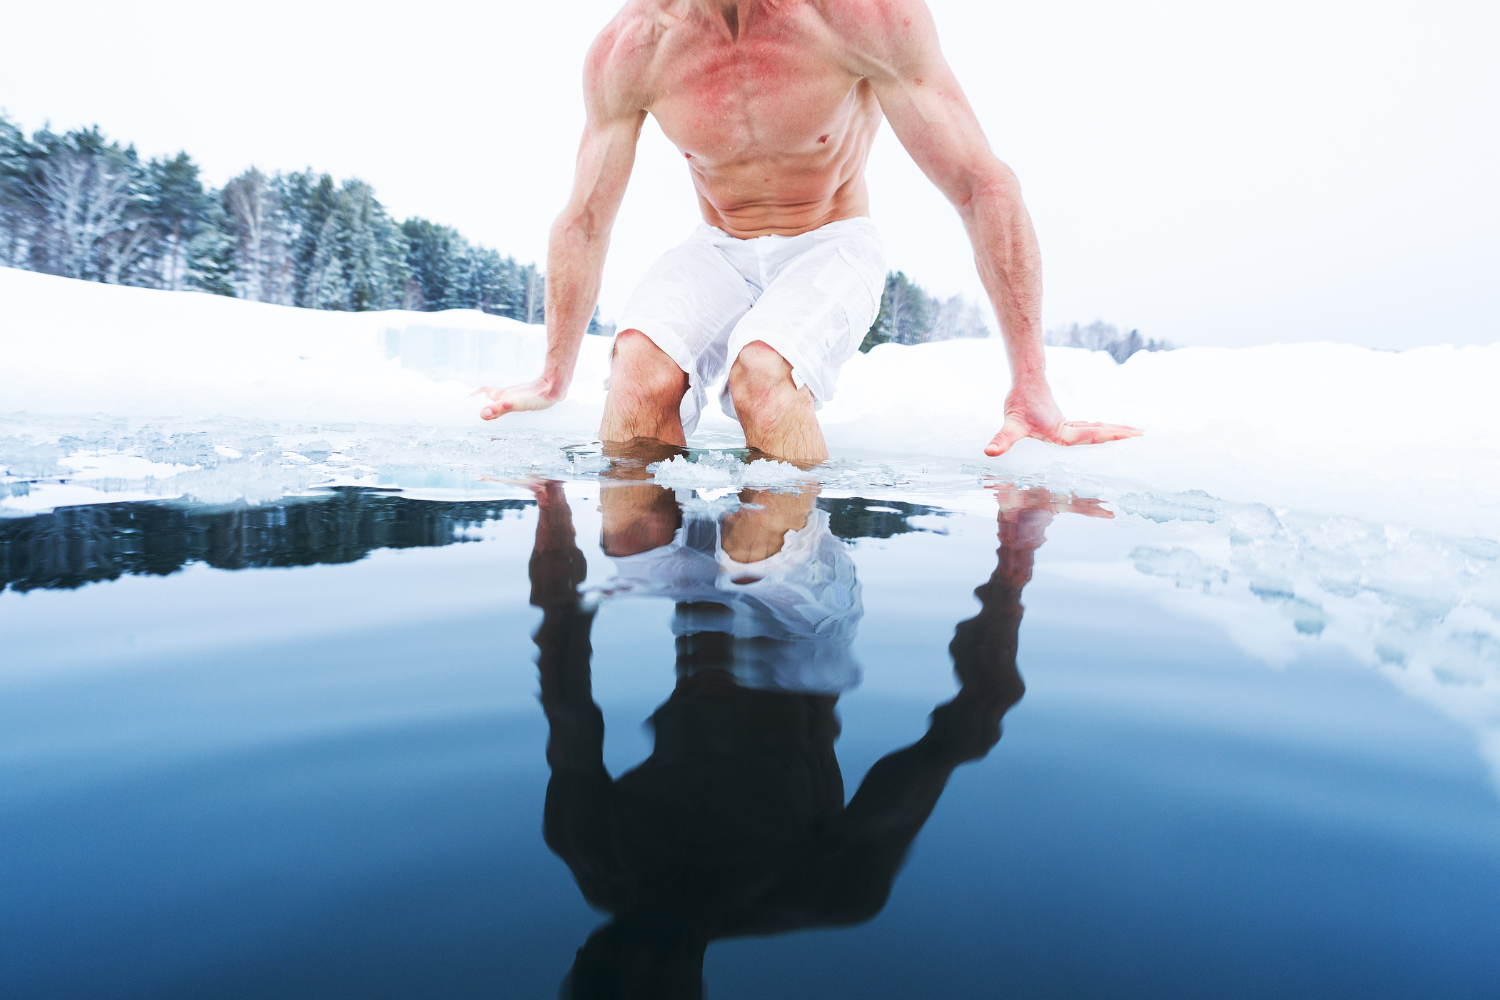 do ice baths help muscle growth